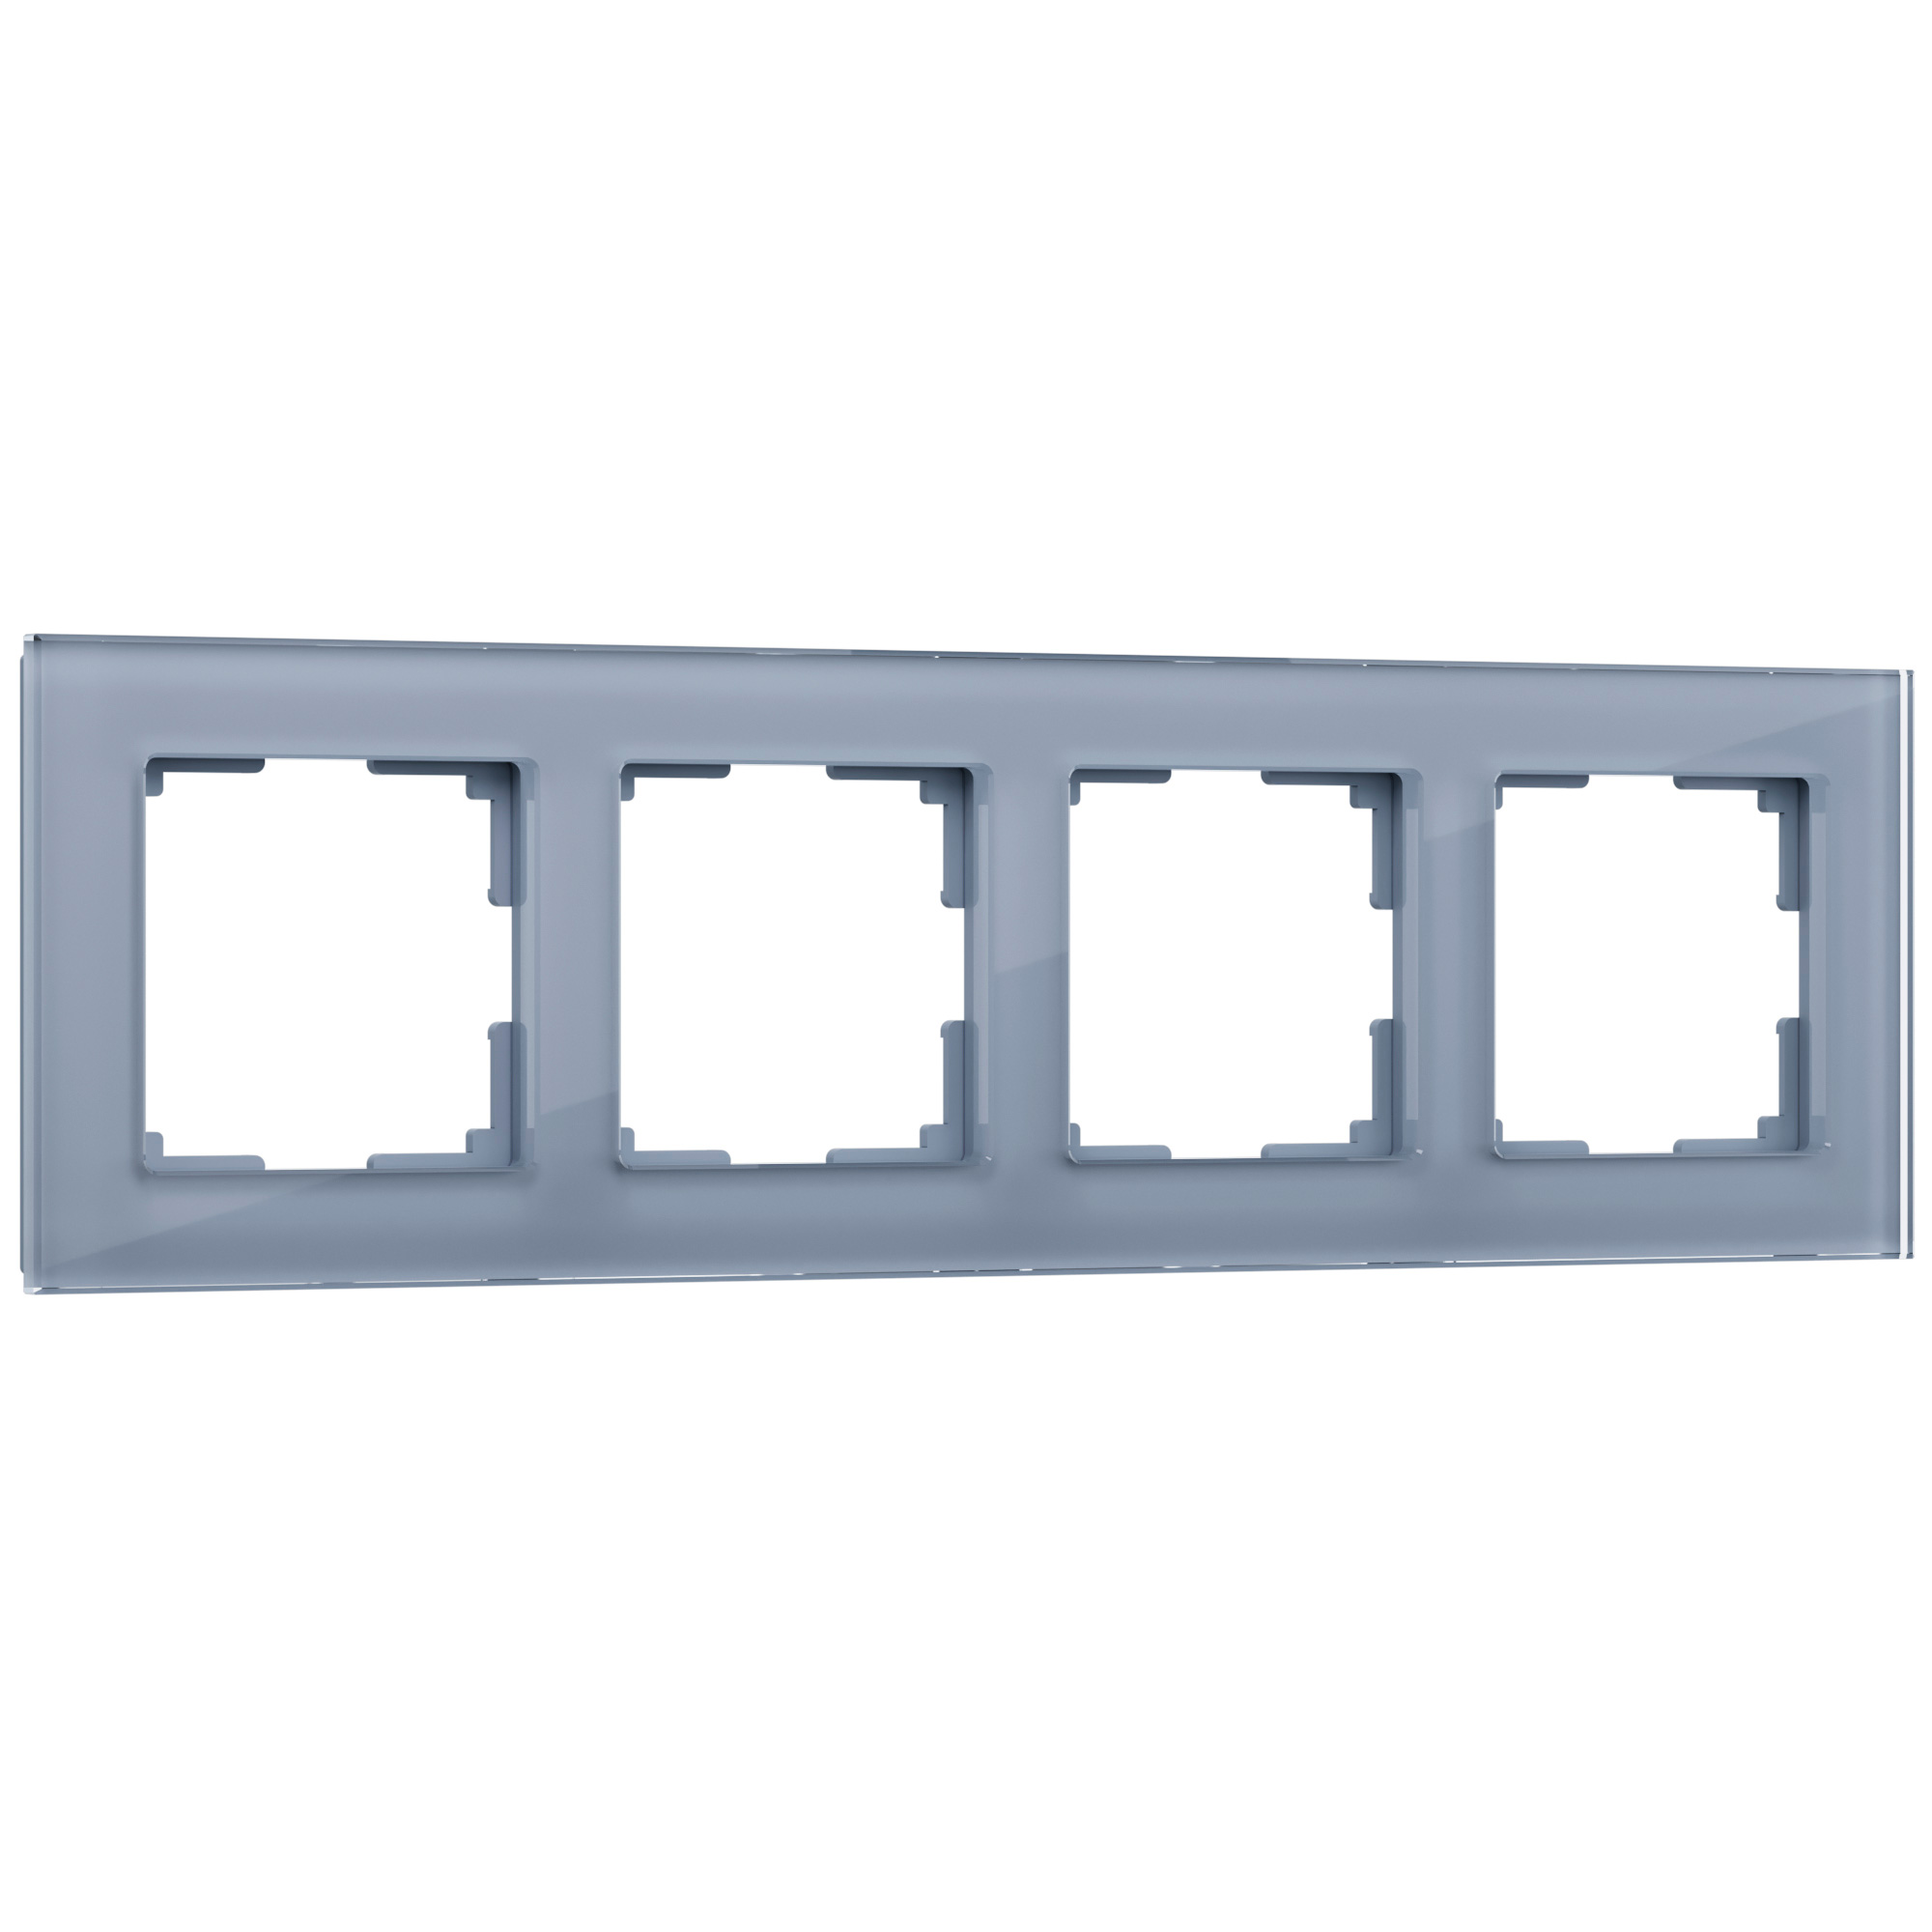 Рамка для розетки / выключателя на 4 поста Werkel W0041115 Favorit серый стекло рамка luxar art на 1 пост стекло мокко 4606400620617